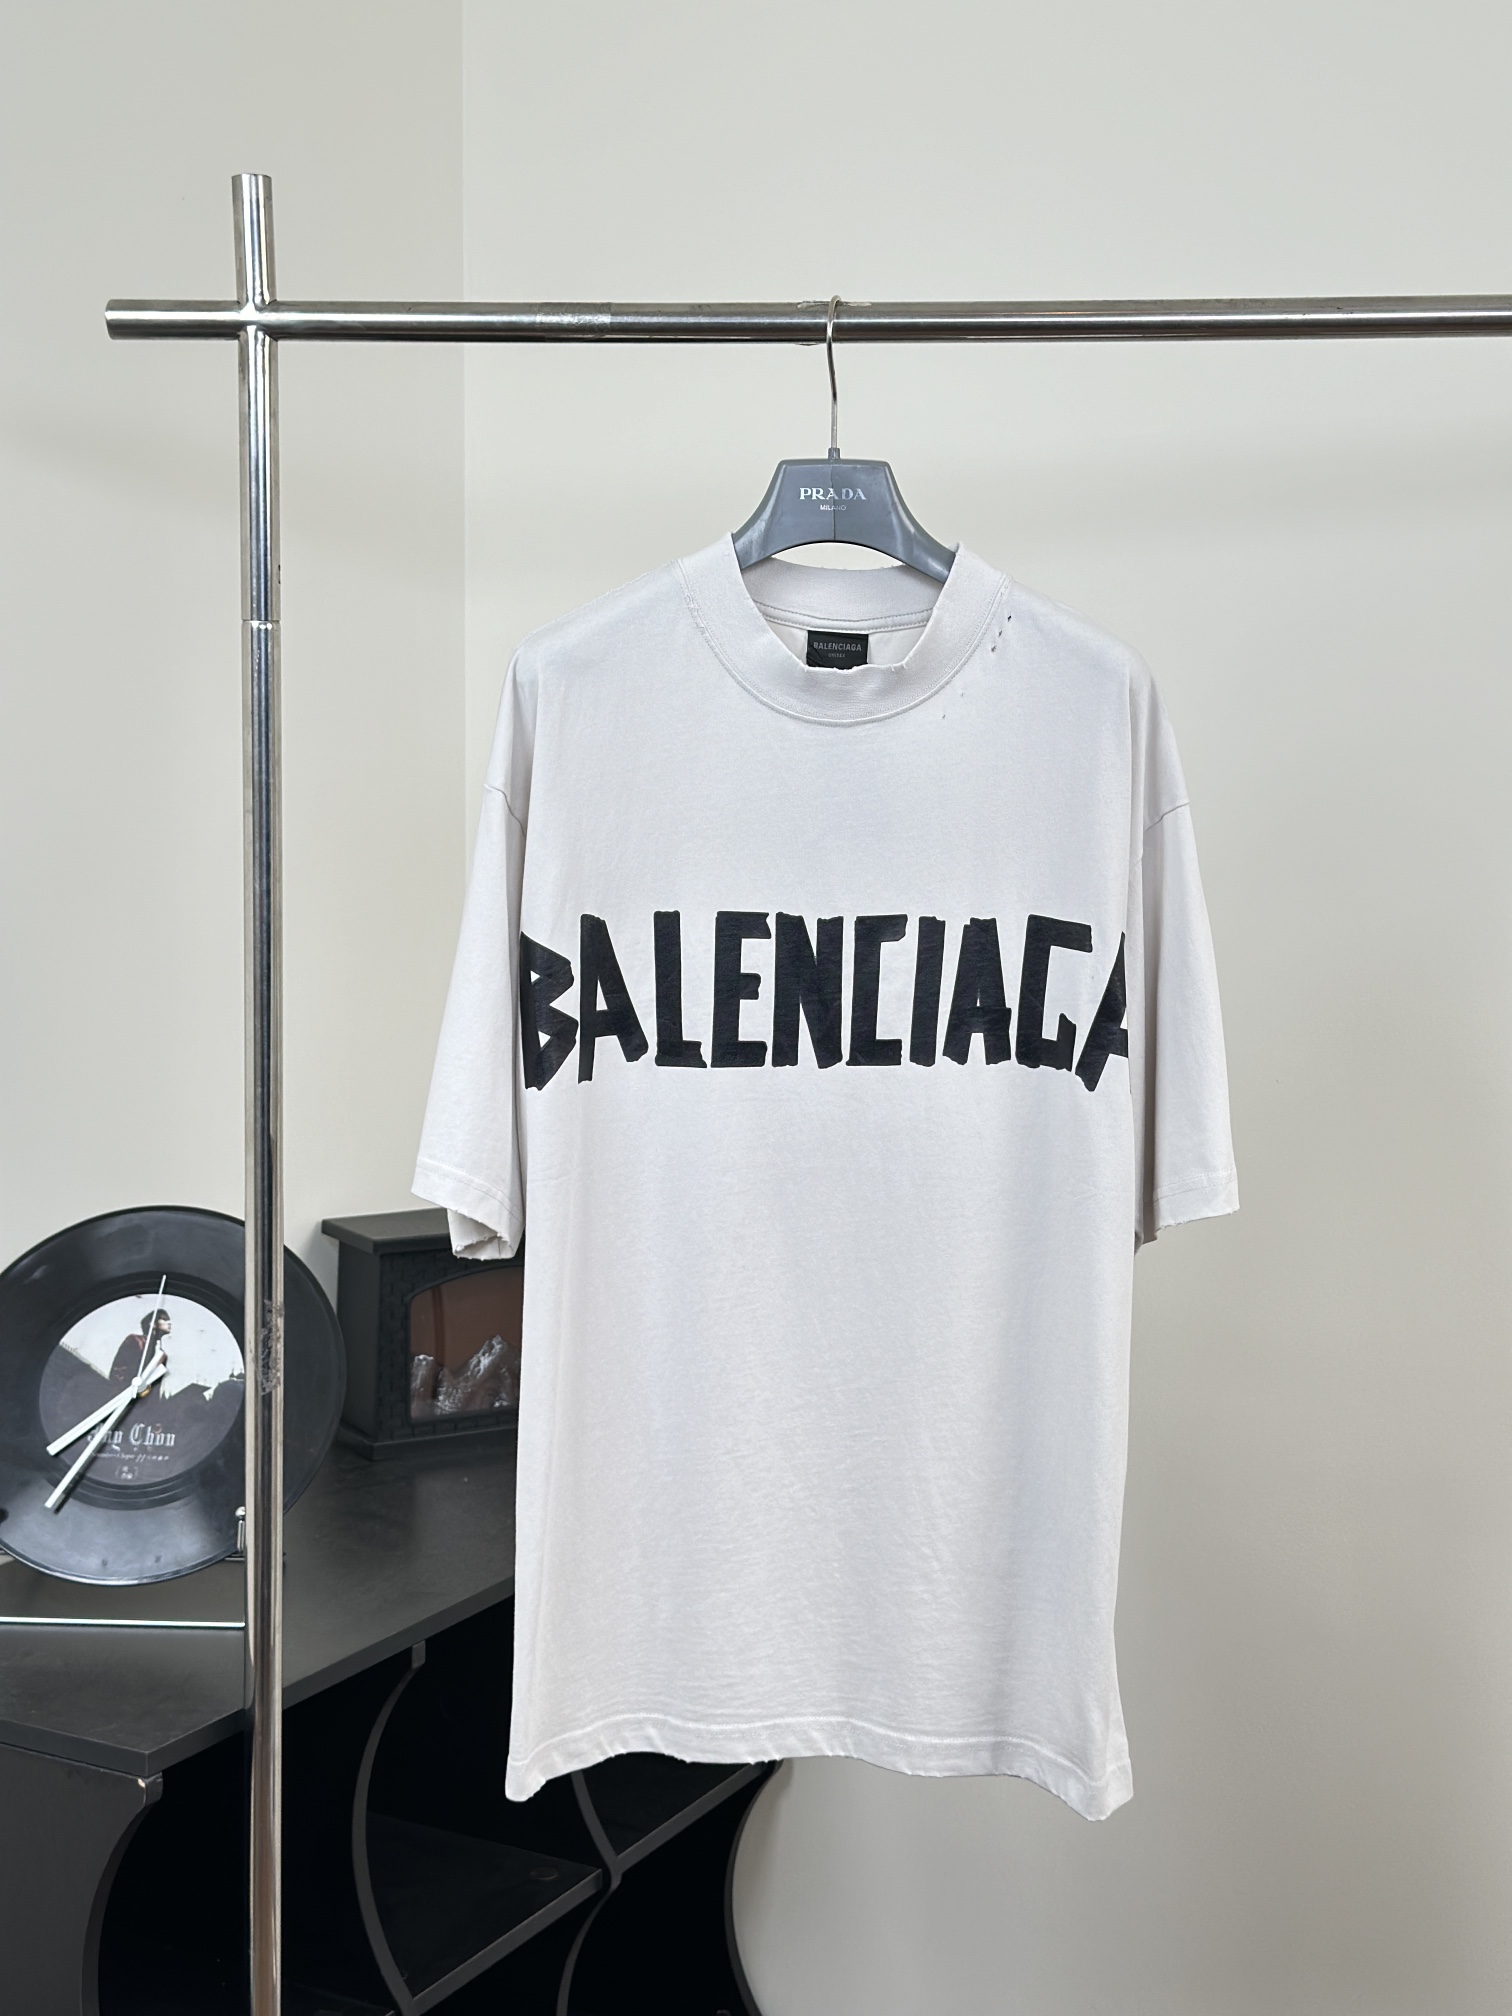 Balenciaga Clothing T-Shirt Spring/Summer Collection Short Sleeve